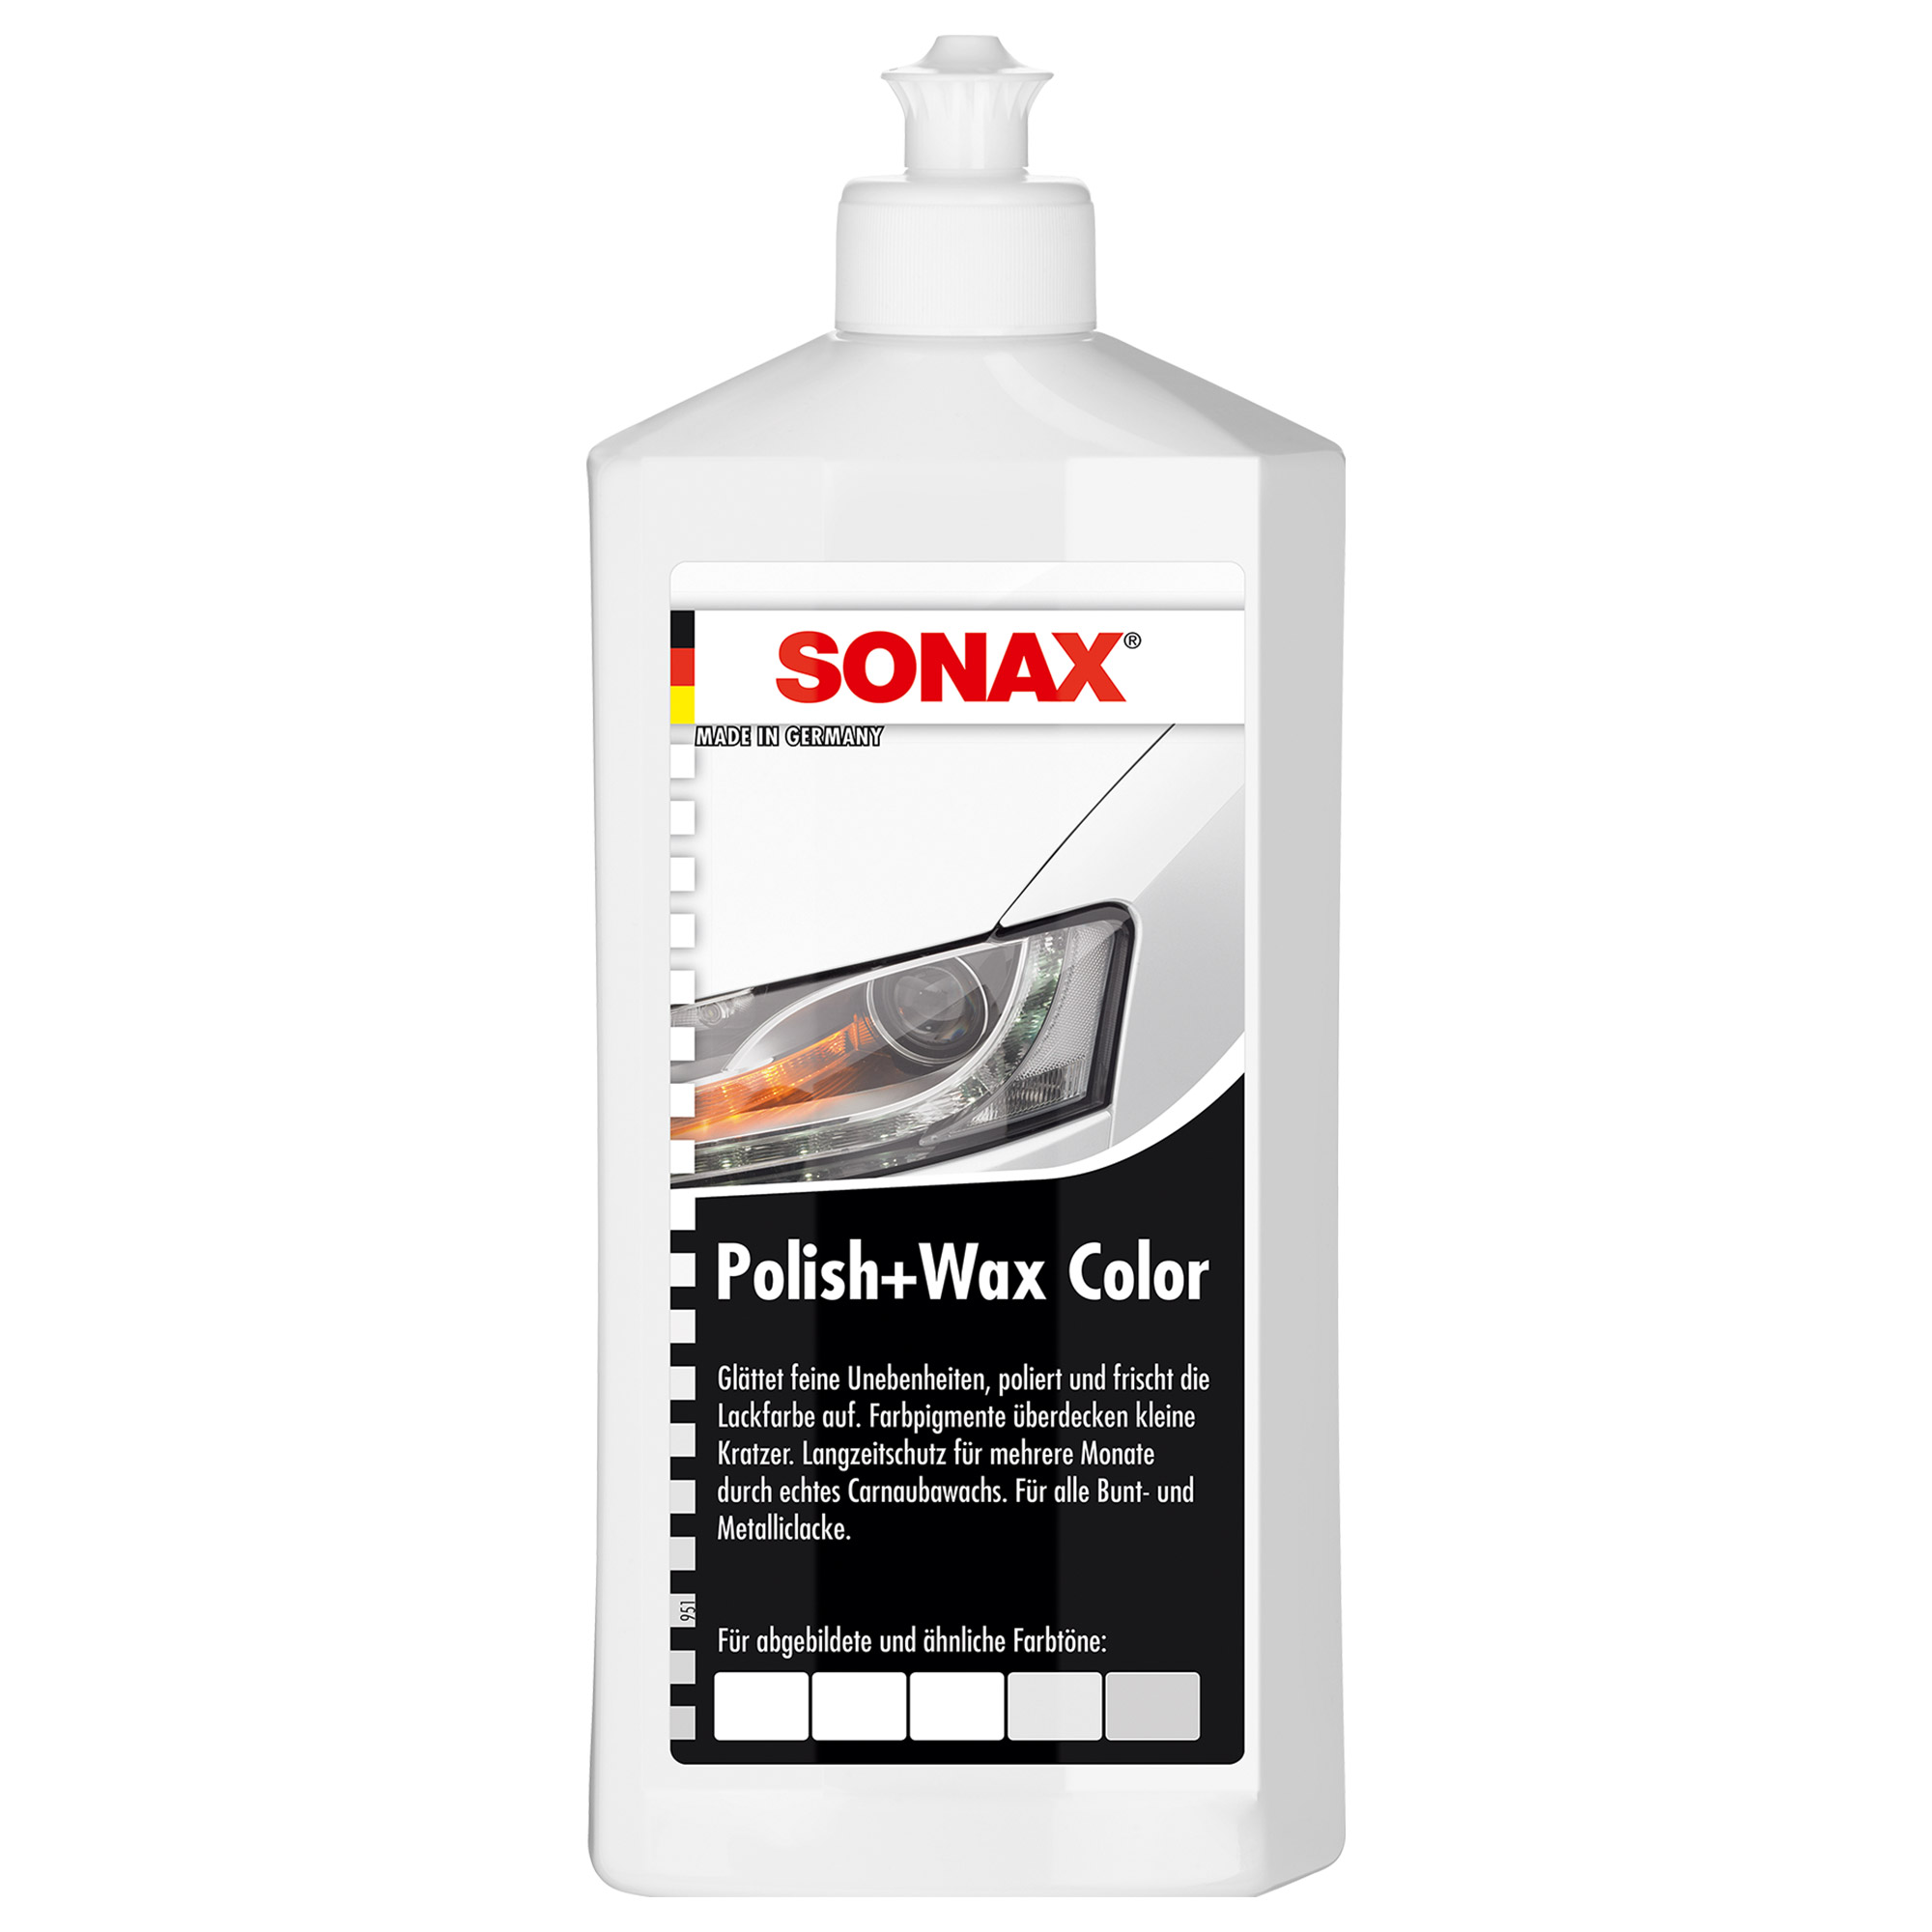 SONAX 02960000 Polish + Wax Color Weiß 500 ml